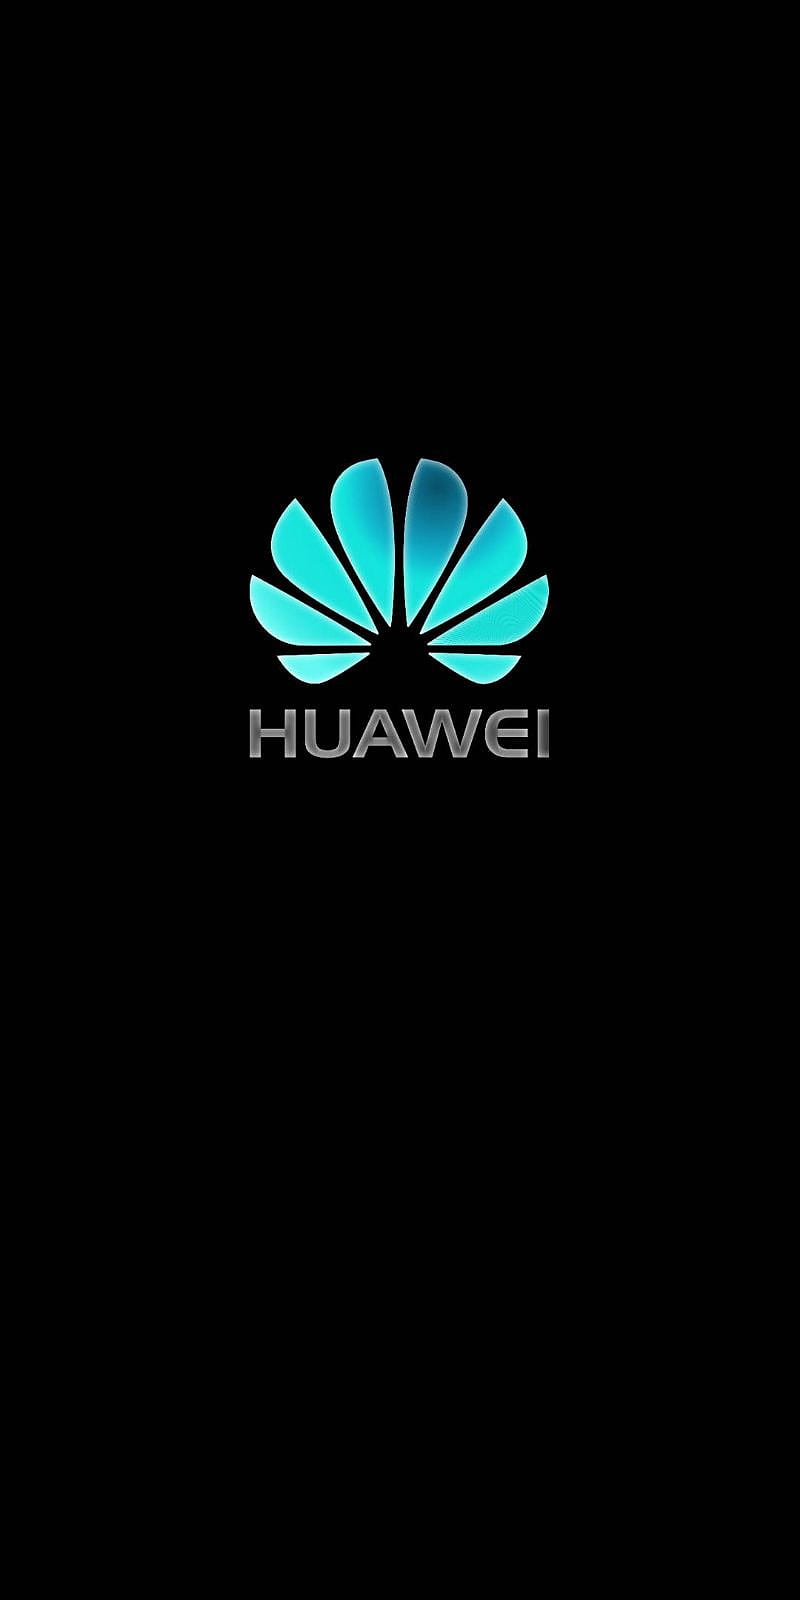 Телефон хуавей на столе. Хуавей. Хуавей логотип. Заставка Huawei. Хуавей логотип вертикальный.